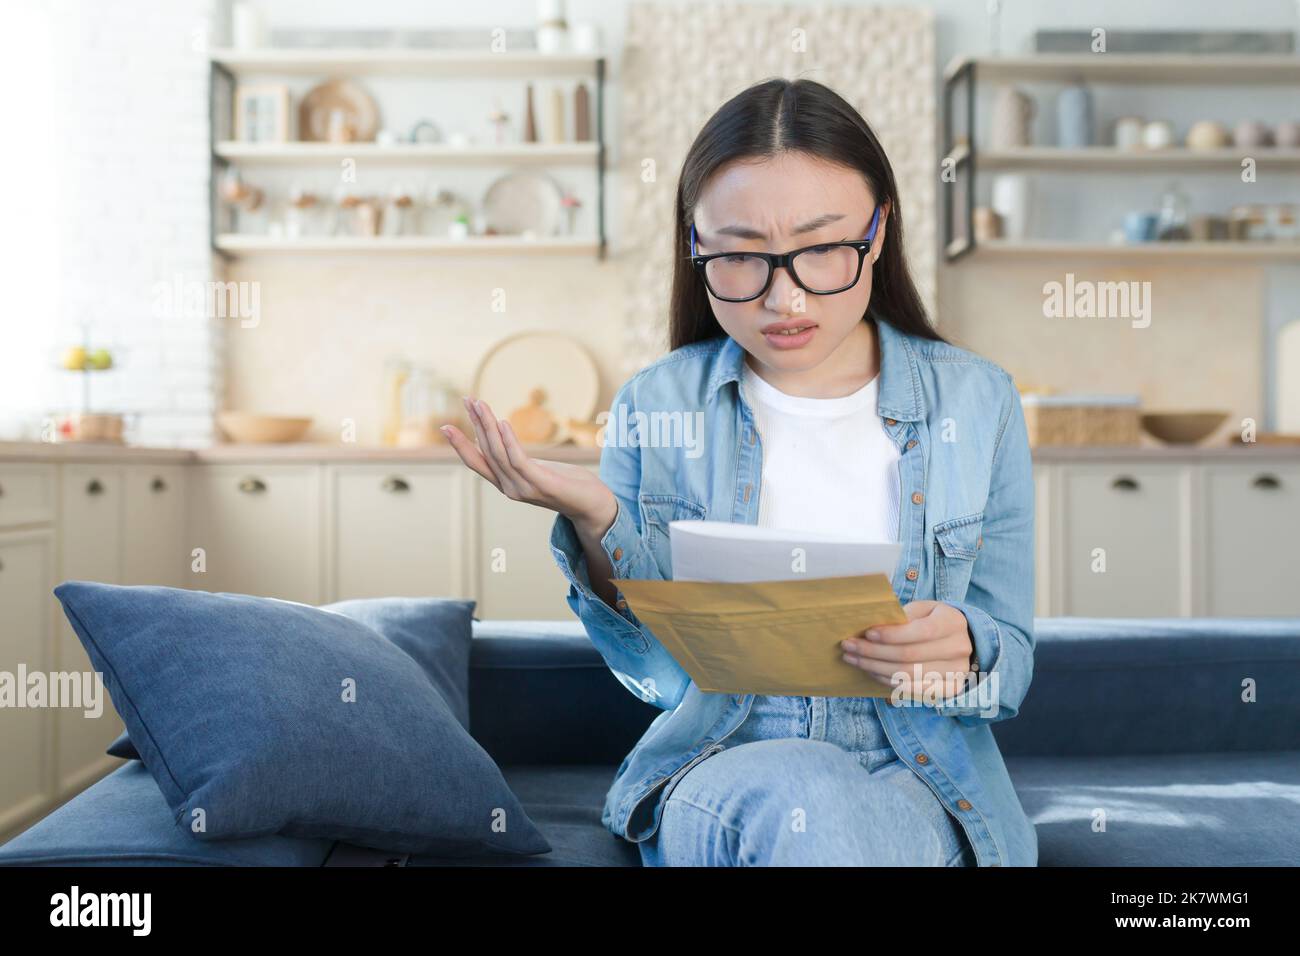 Schlechter Brief von der Bank, Frau, die zu Hause sitzt, enttäuscht und traurig, die Nachricht schlechte Nachrichten liest, asiatische Frau in der Küche. Stockfoto